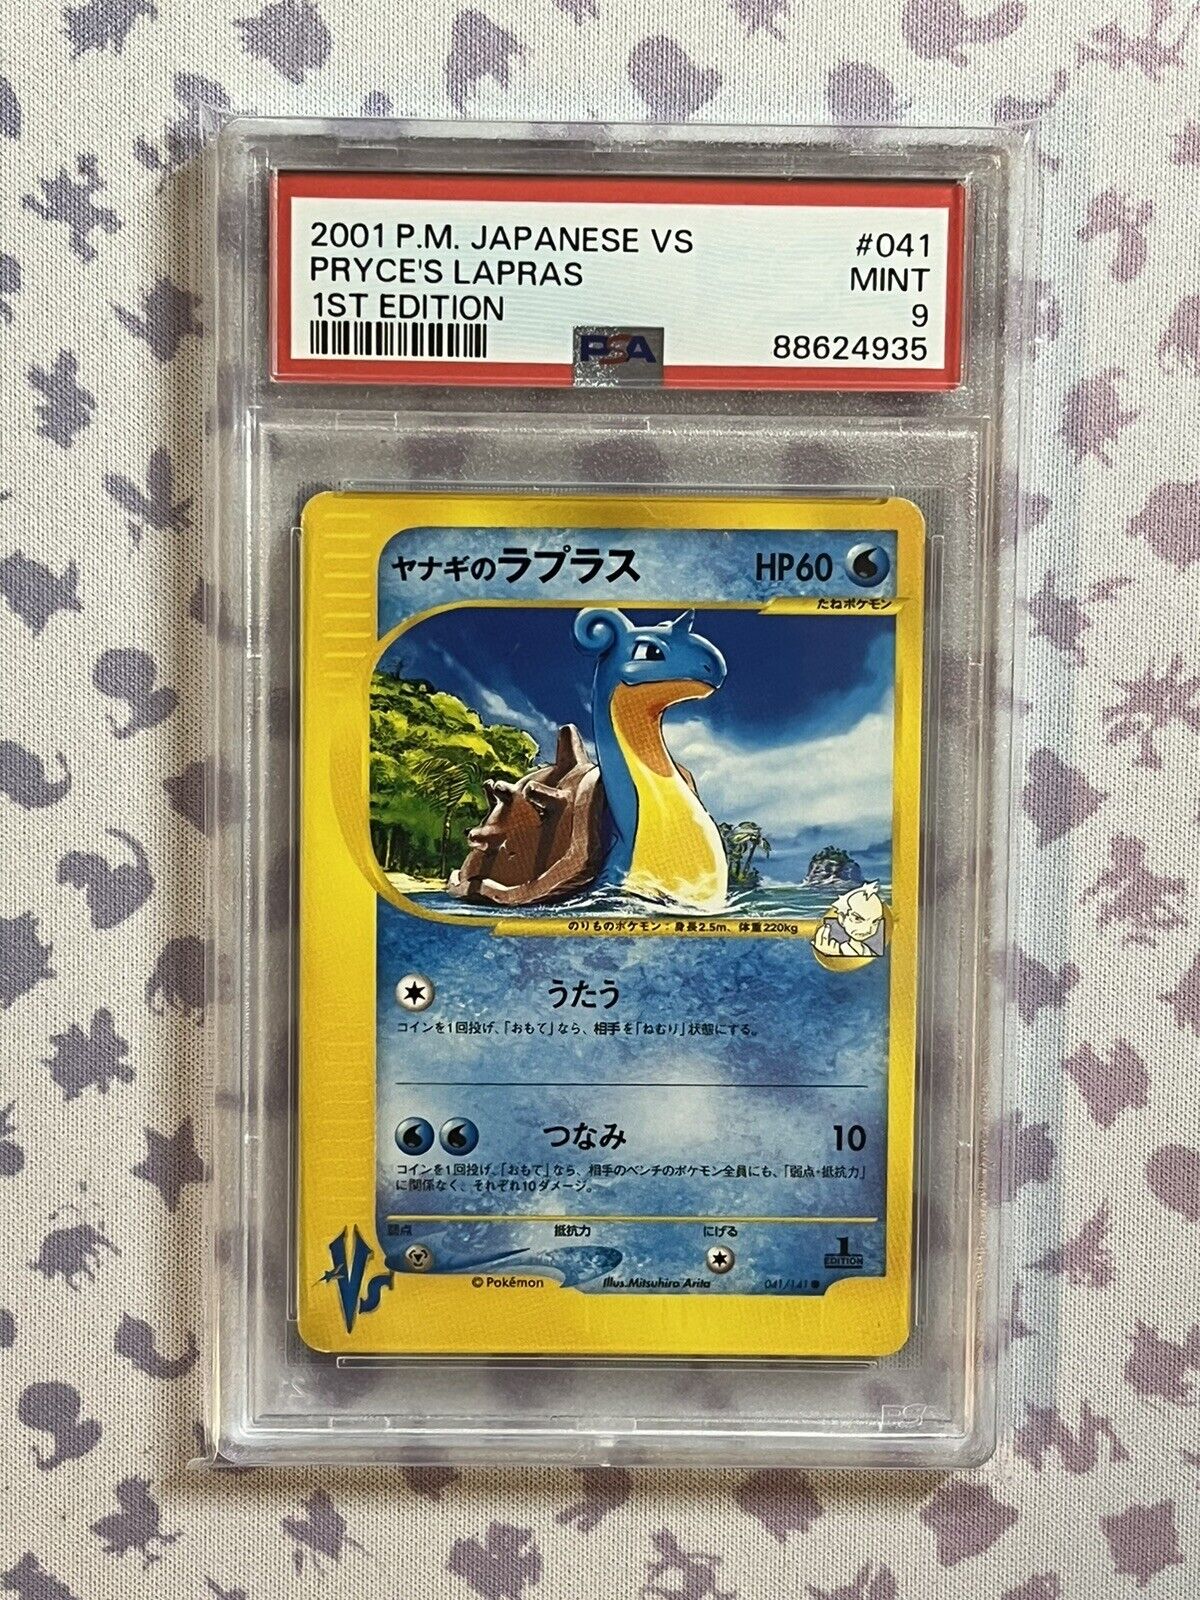 PSA 9 Pokémon TCG Vs Pryce's Lapras 1st Edition